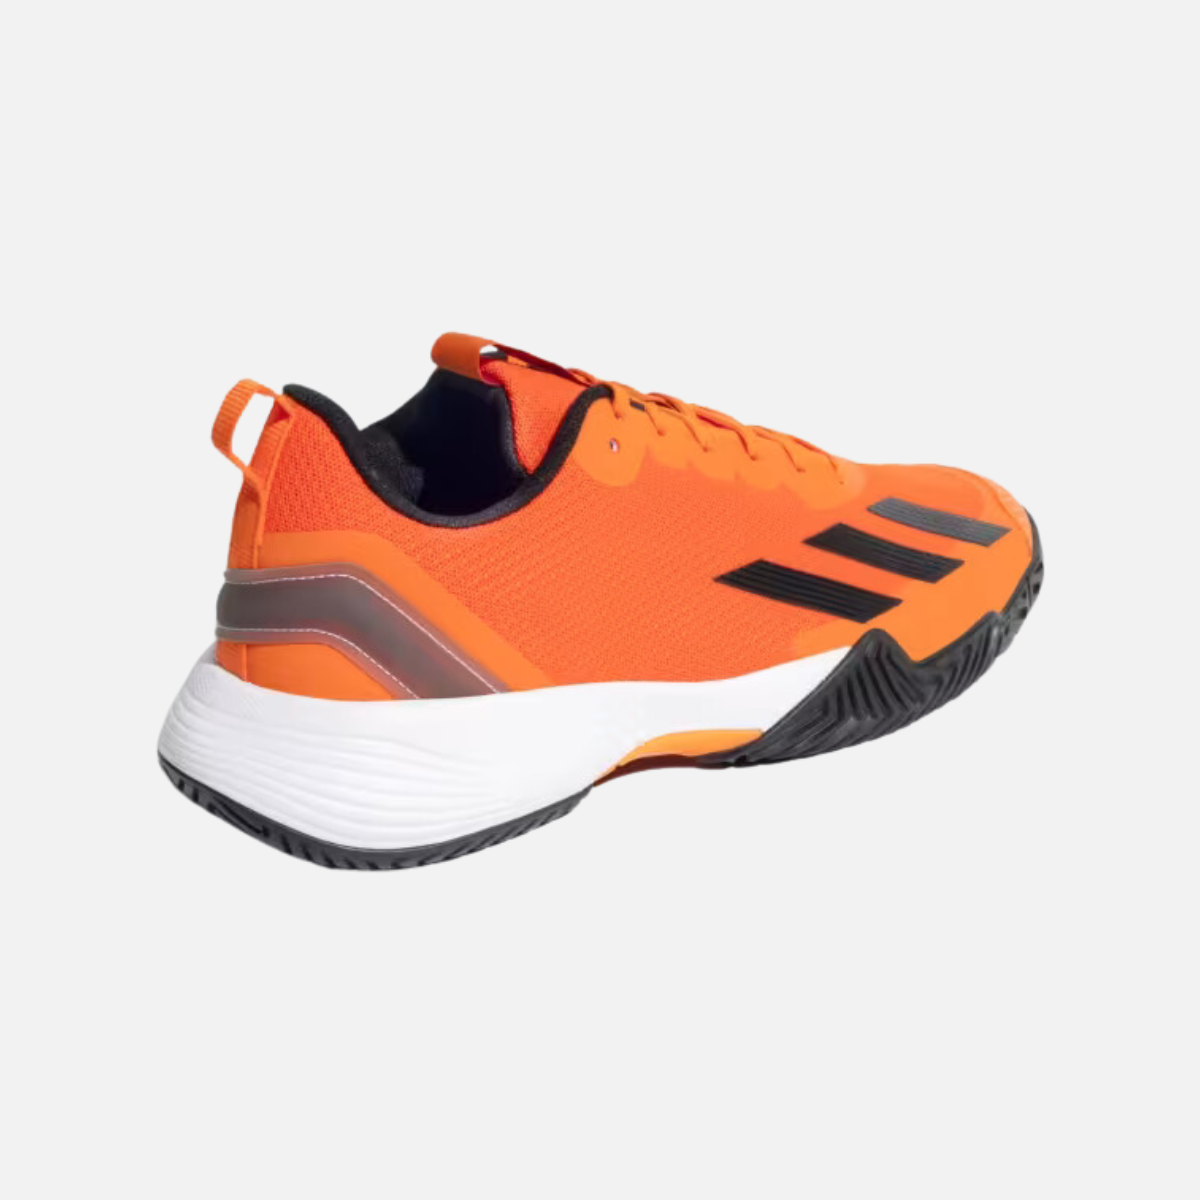 Adidas All Court Prime Tennis Shoes -Semi Impact Orange/Black/Bordeaux